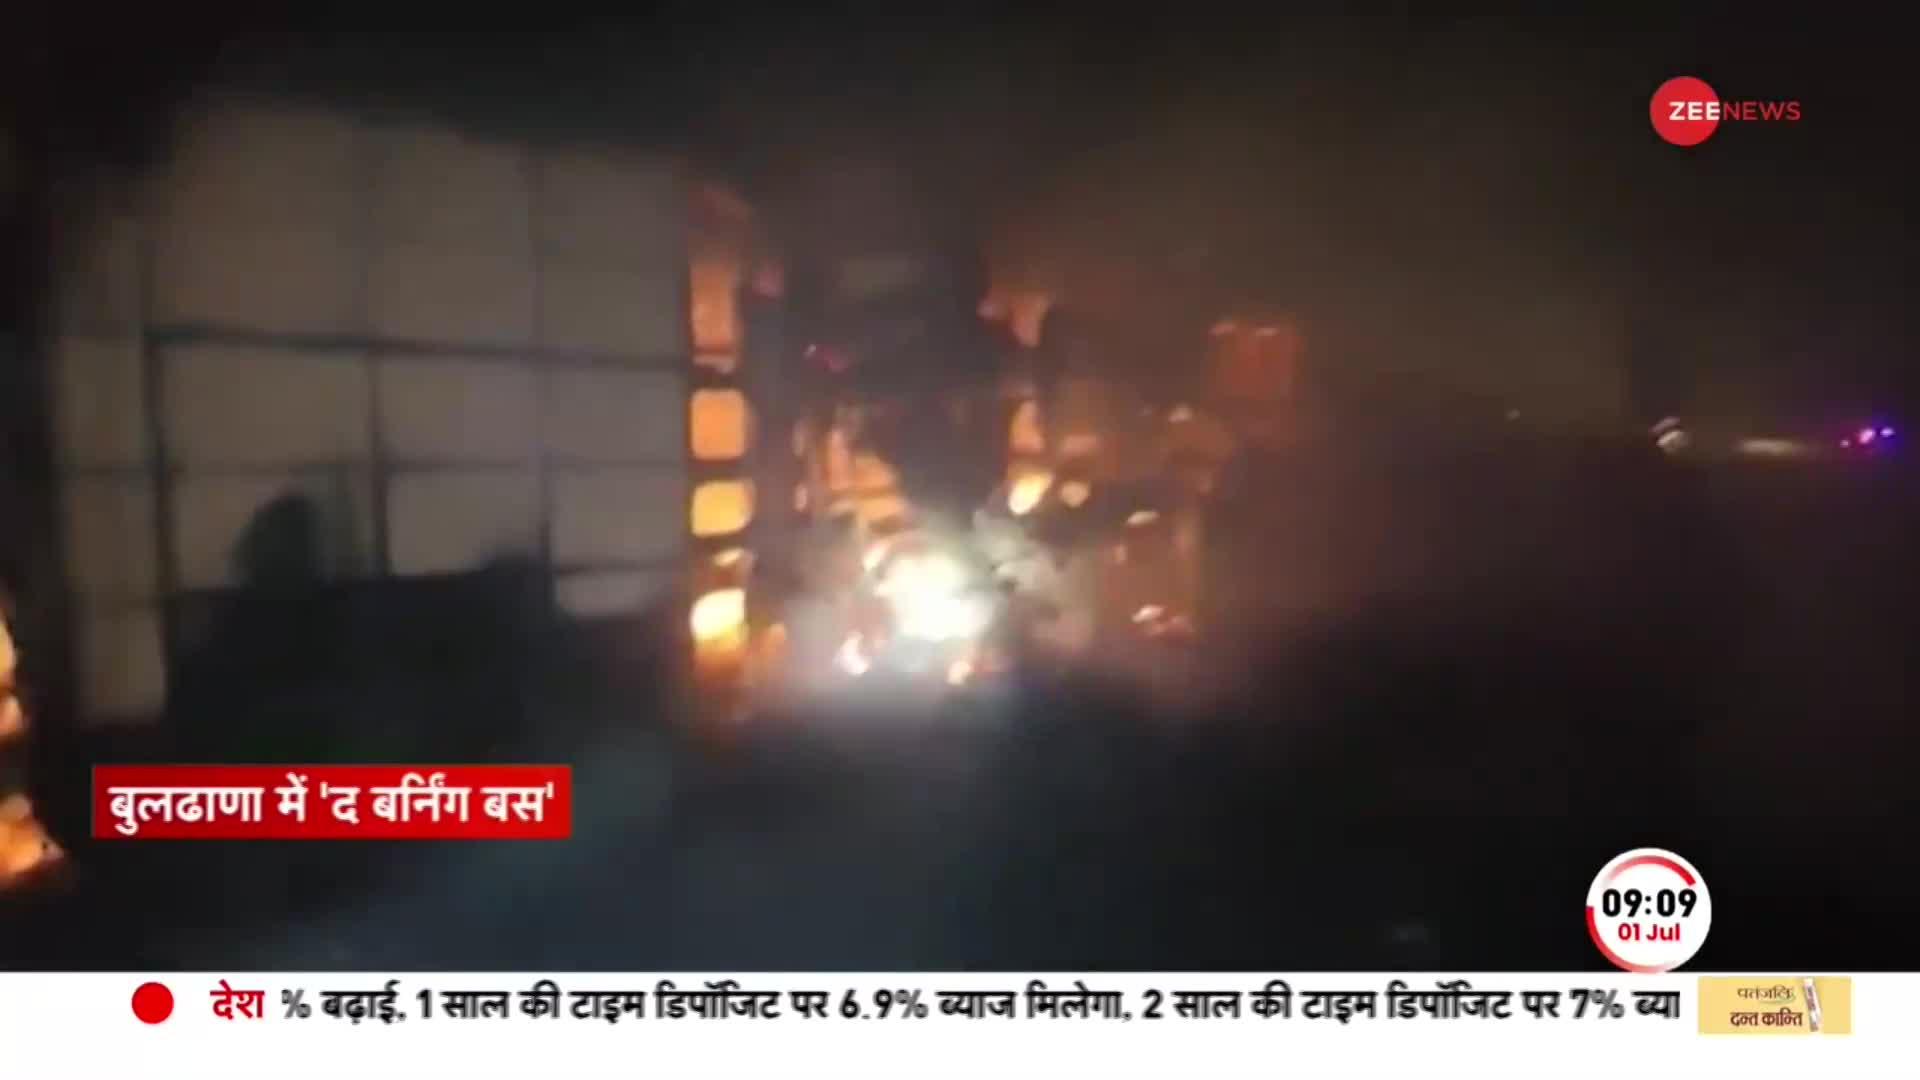 Maharashtra Bus Accident: महाराष्ट्र में बस में लगी भीषण आग, हादसे में 26 लोगों की जलकर मौत